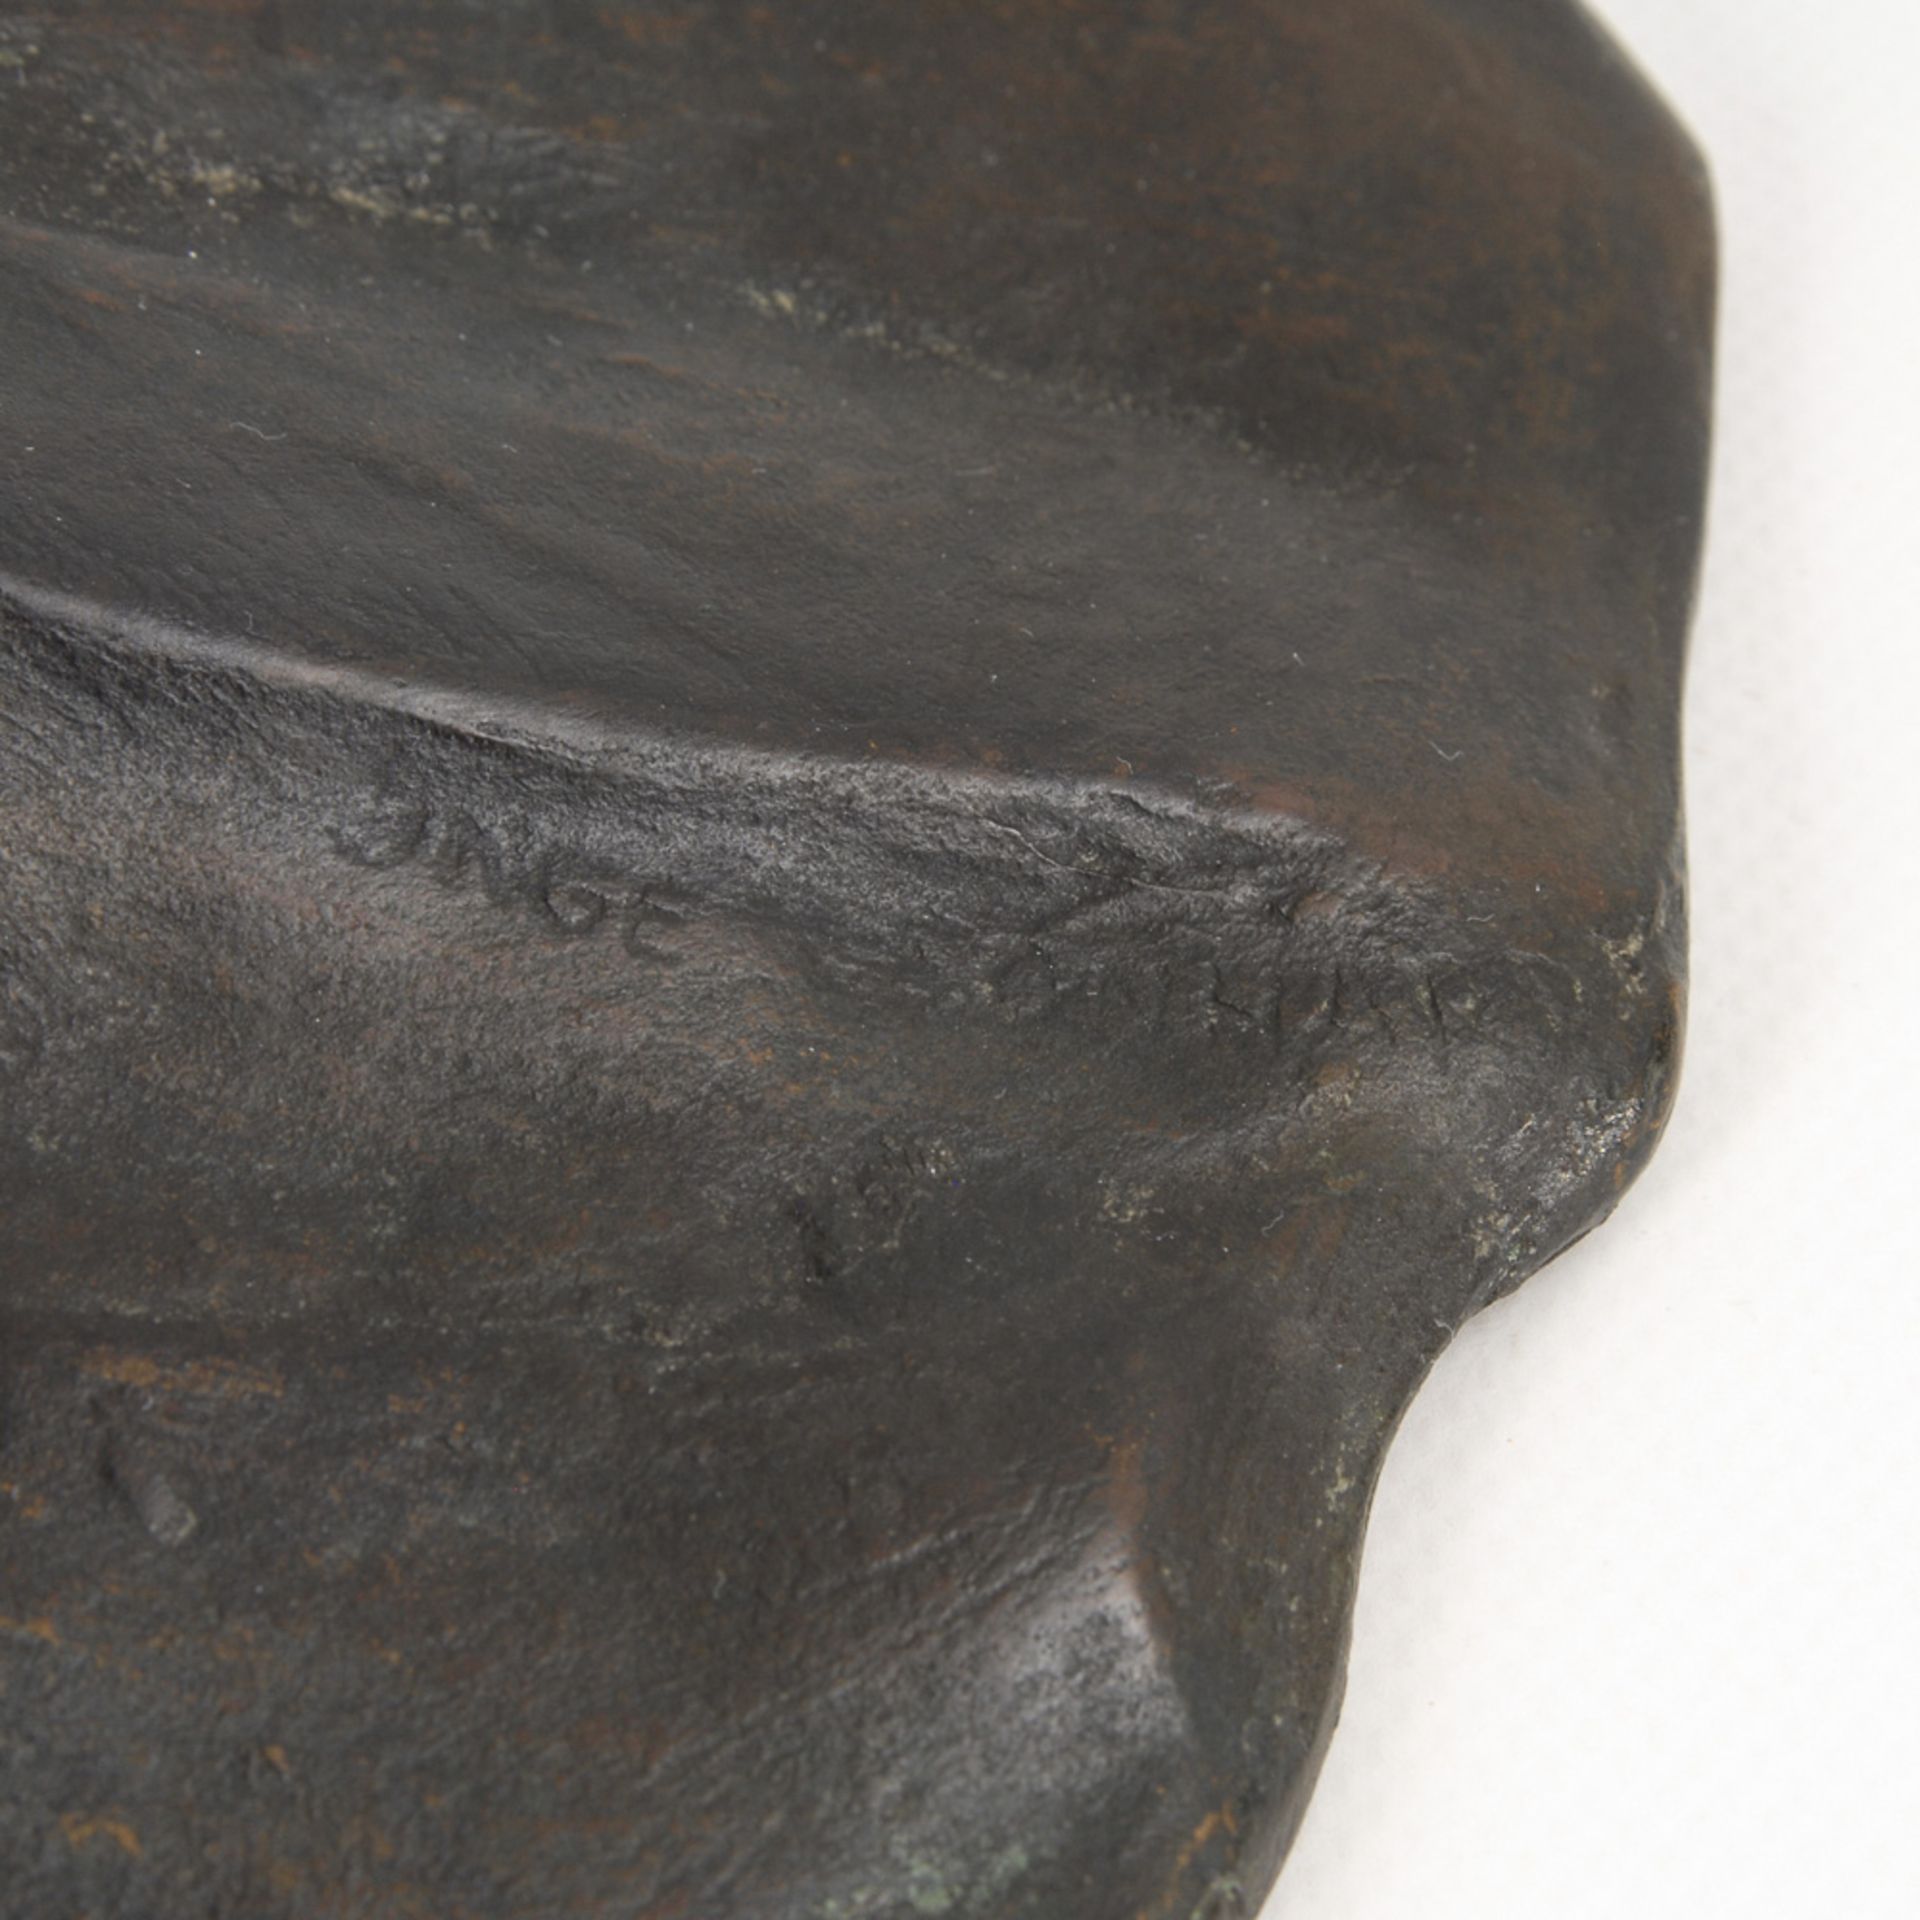 LEONHARDT, Inge: Tänzerin.Bronze patiniert, bezeichnet. H 47 cm. Gleichsam floral stilisierte, - Bild 5 aus 5